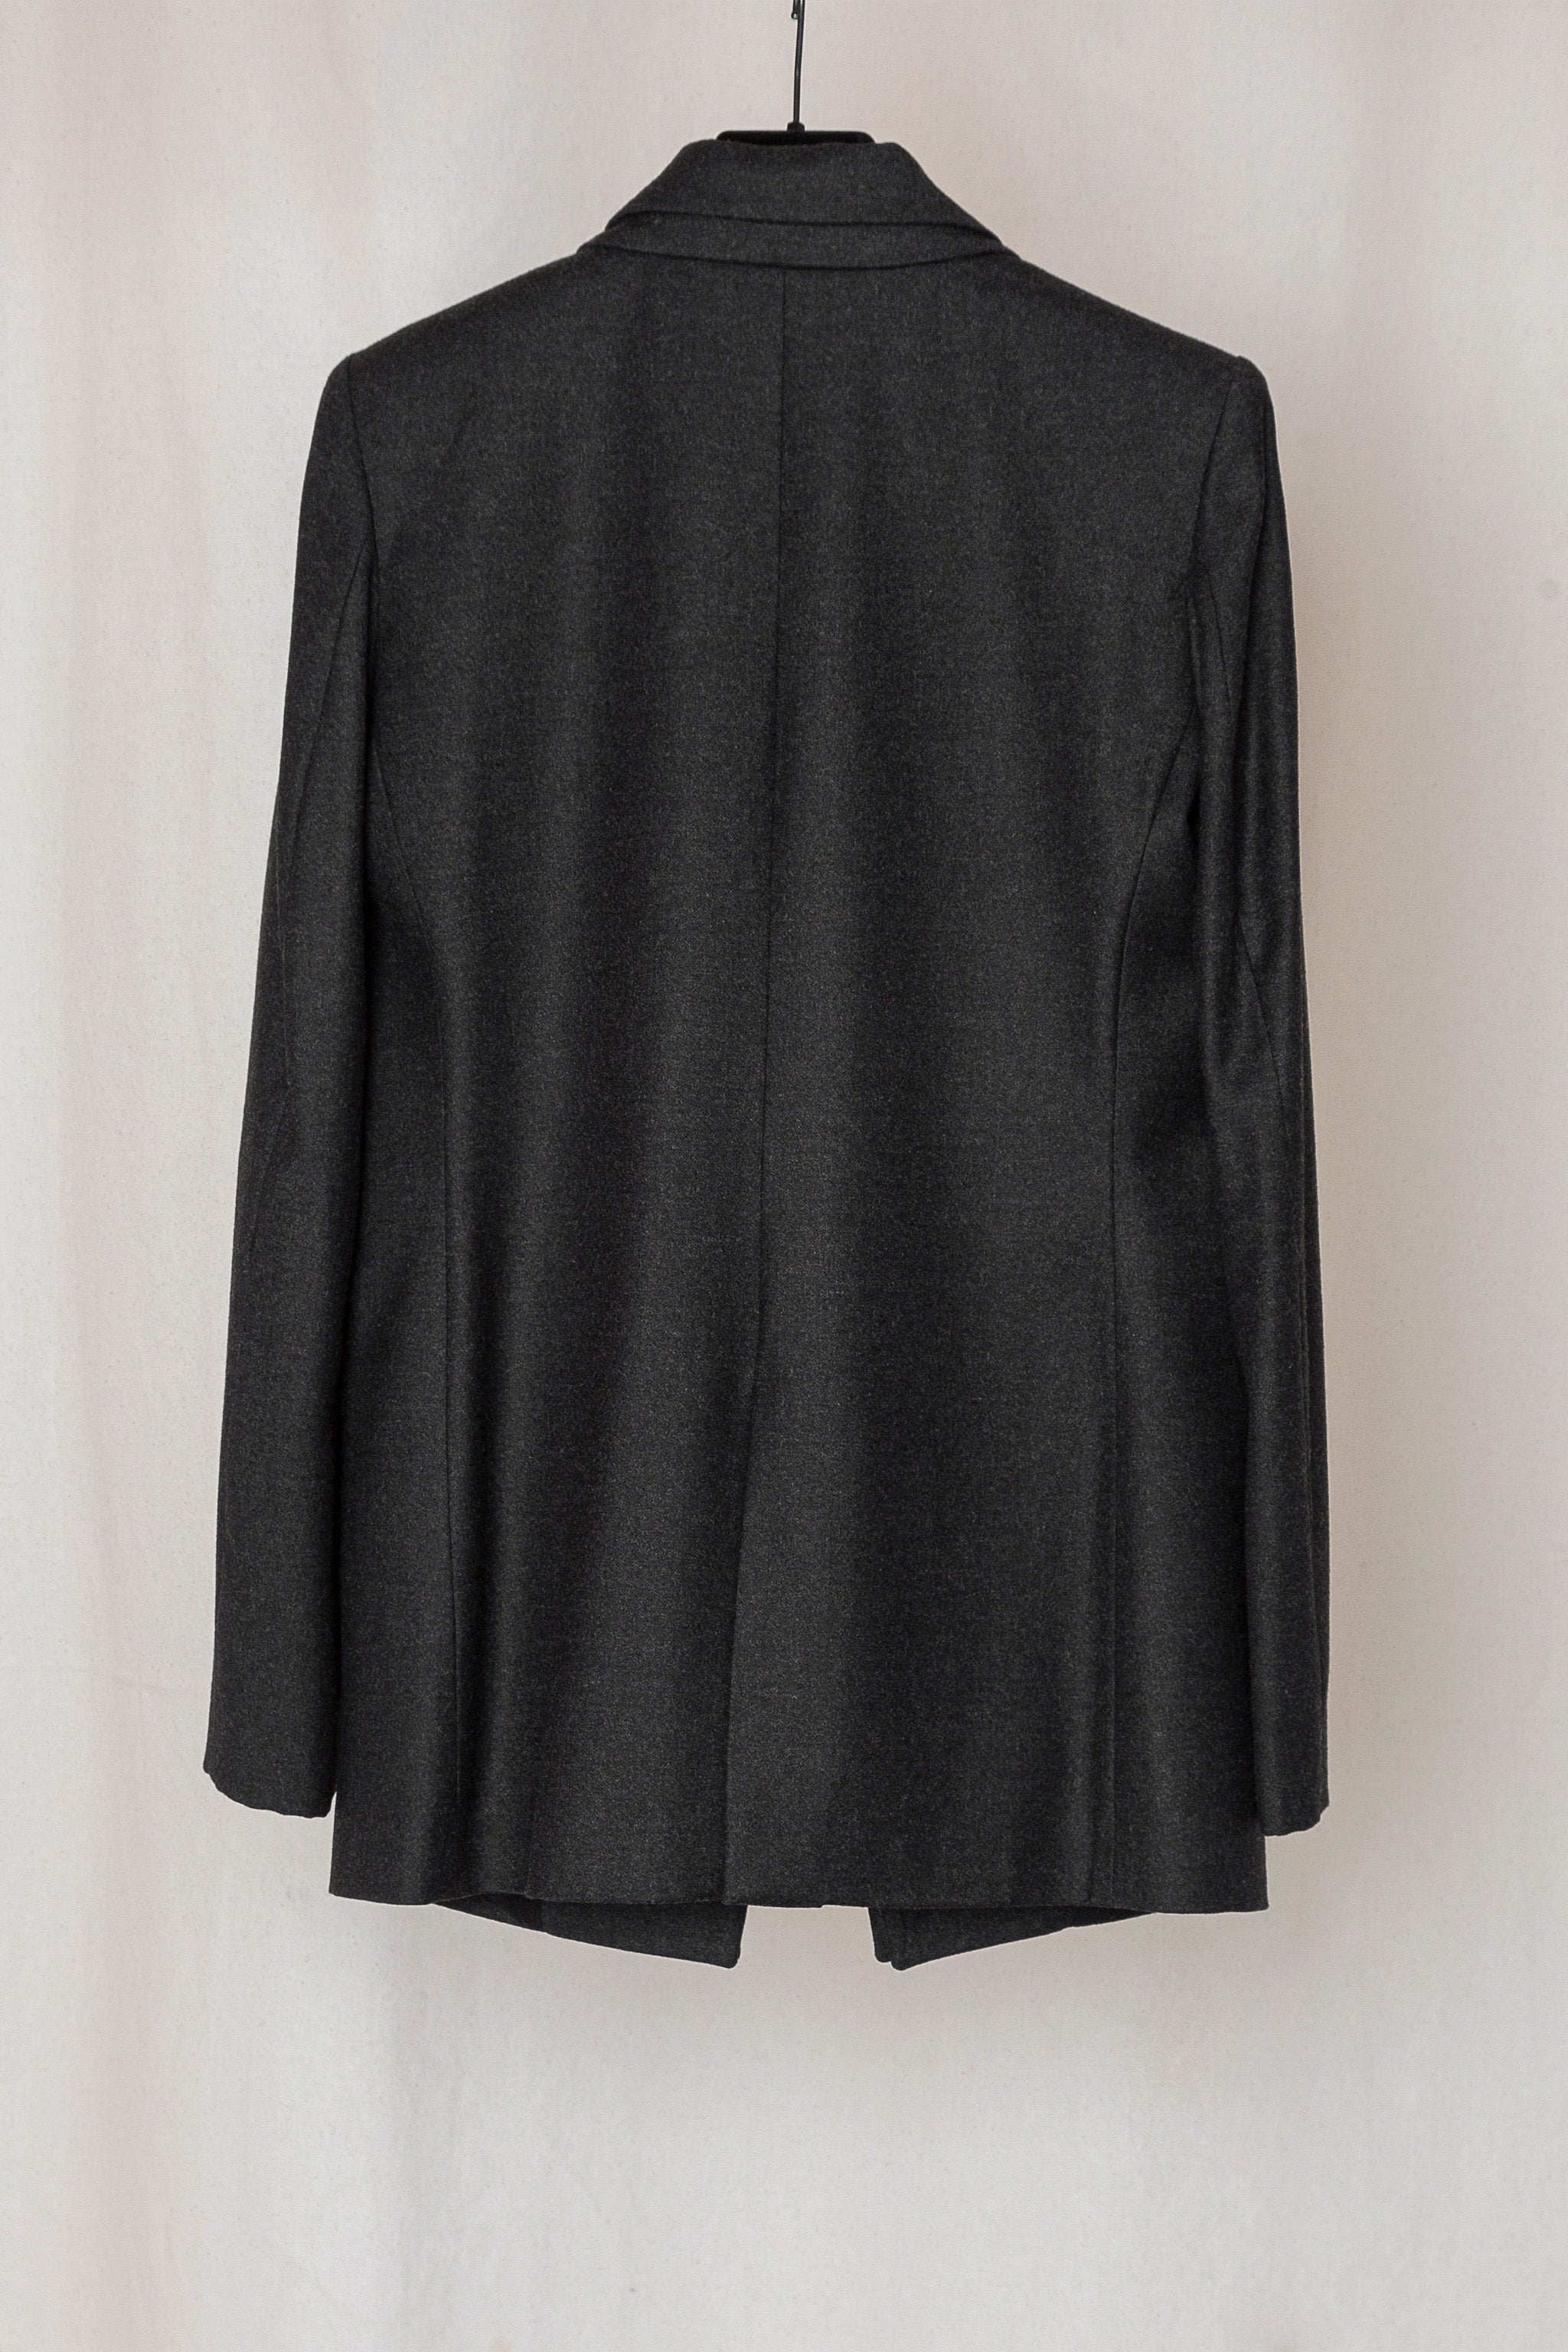 Black Mottled Loro Piana Fine Wool No.26 Double Collar Jacket